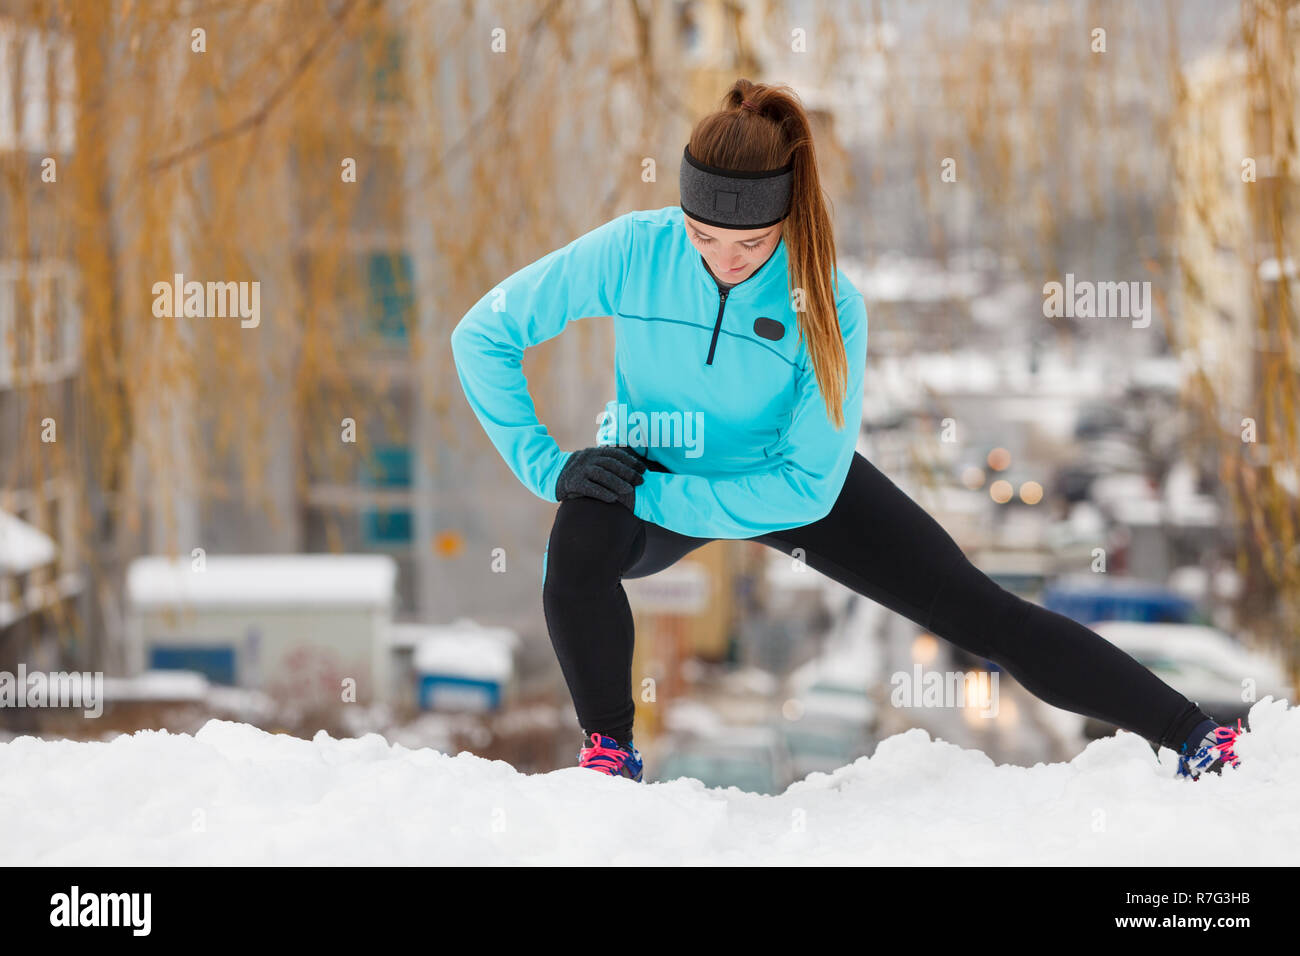 Mädchen Sportbekleidung tragen und Dehnübungen auf Schnee mit städtischen  Hintergrund. Winter Sport, Outdoor Fitness, Mode, Training, Gesundheit  Konzept Stockfotografie - Alamy